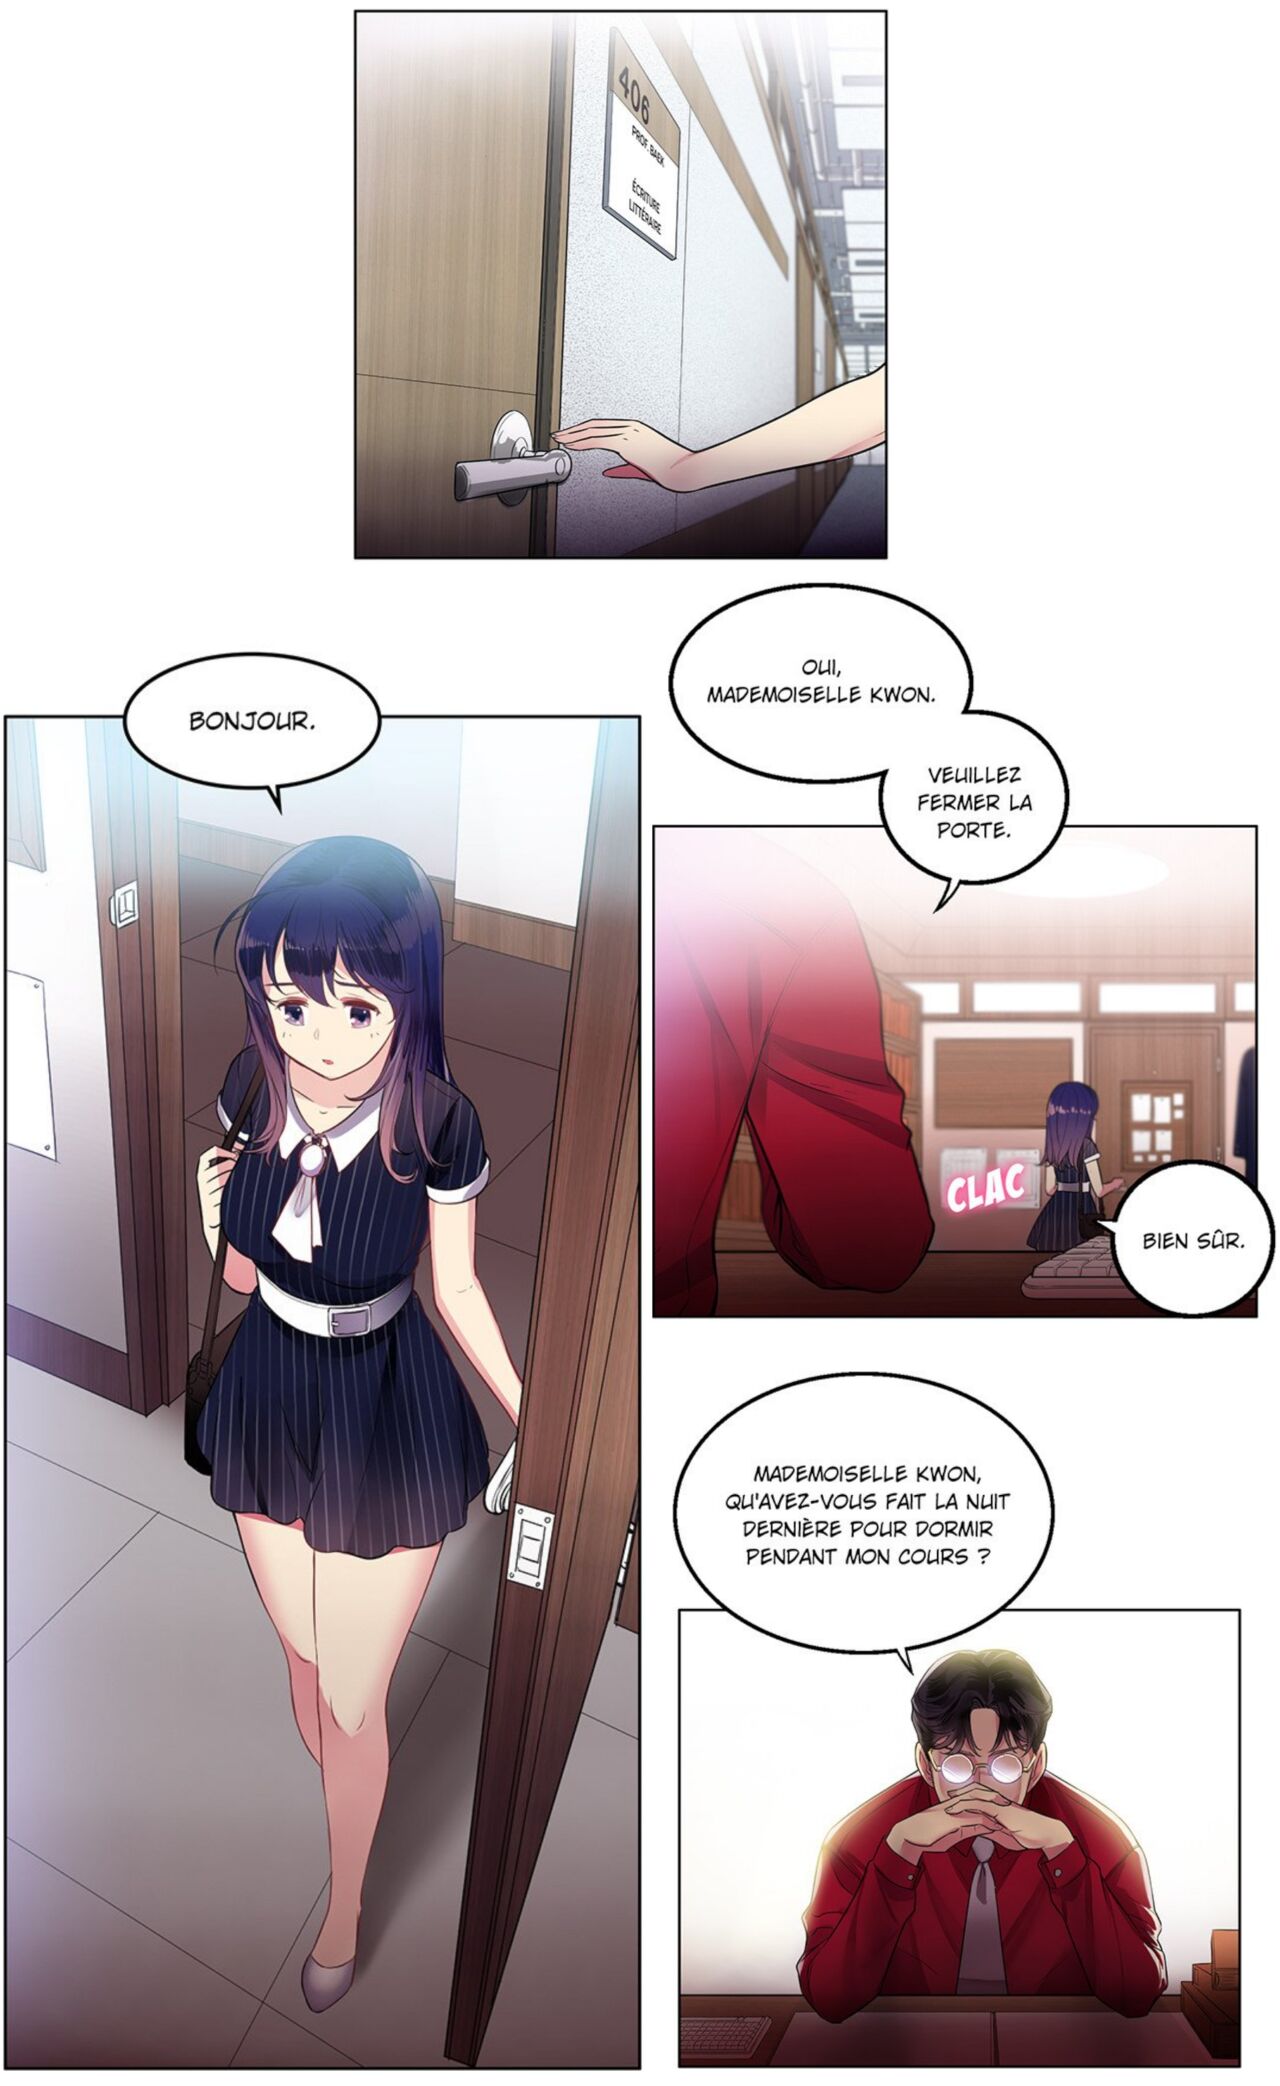 La double vie de Yuri numero d'image 57